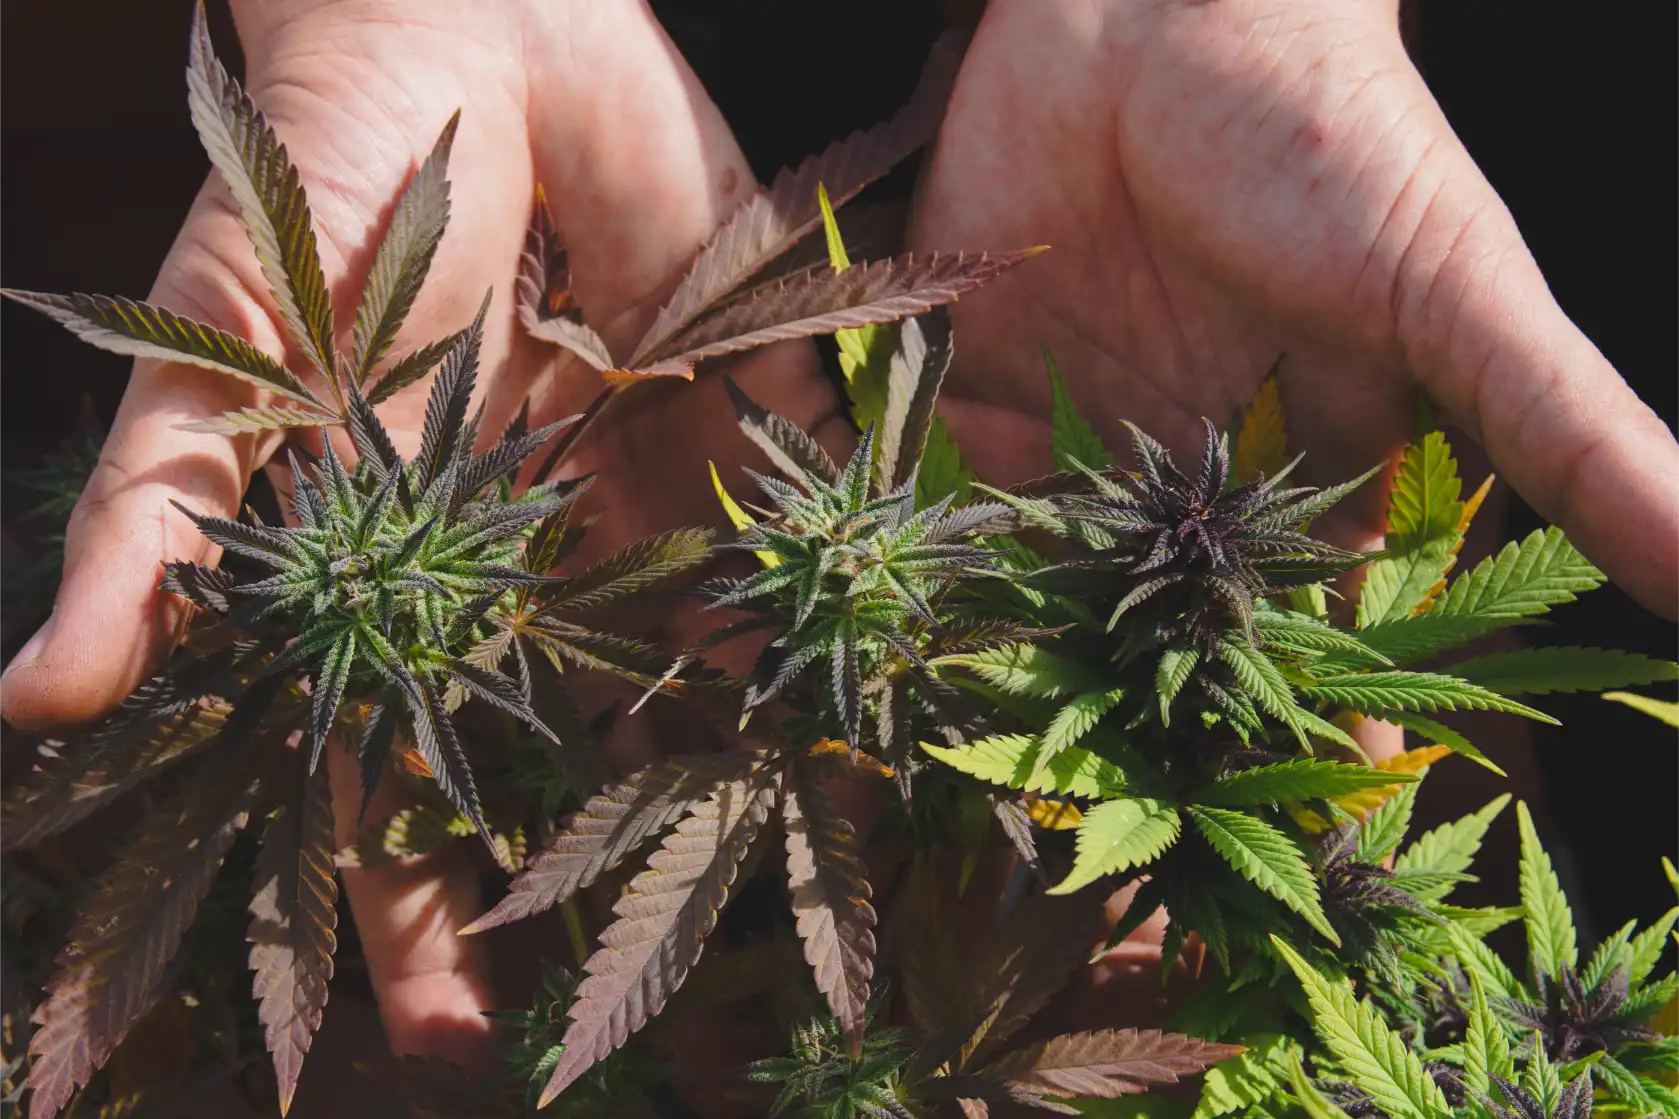 cordoba quiere prohibir el autocultivo de cannabis